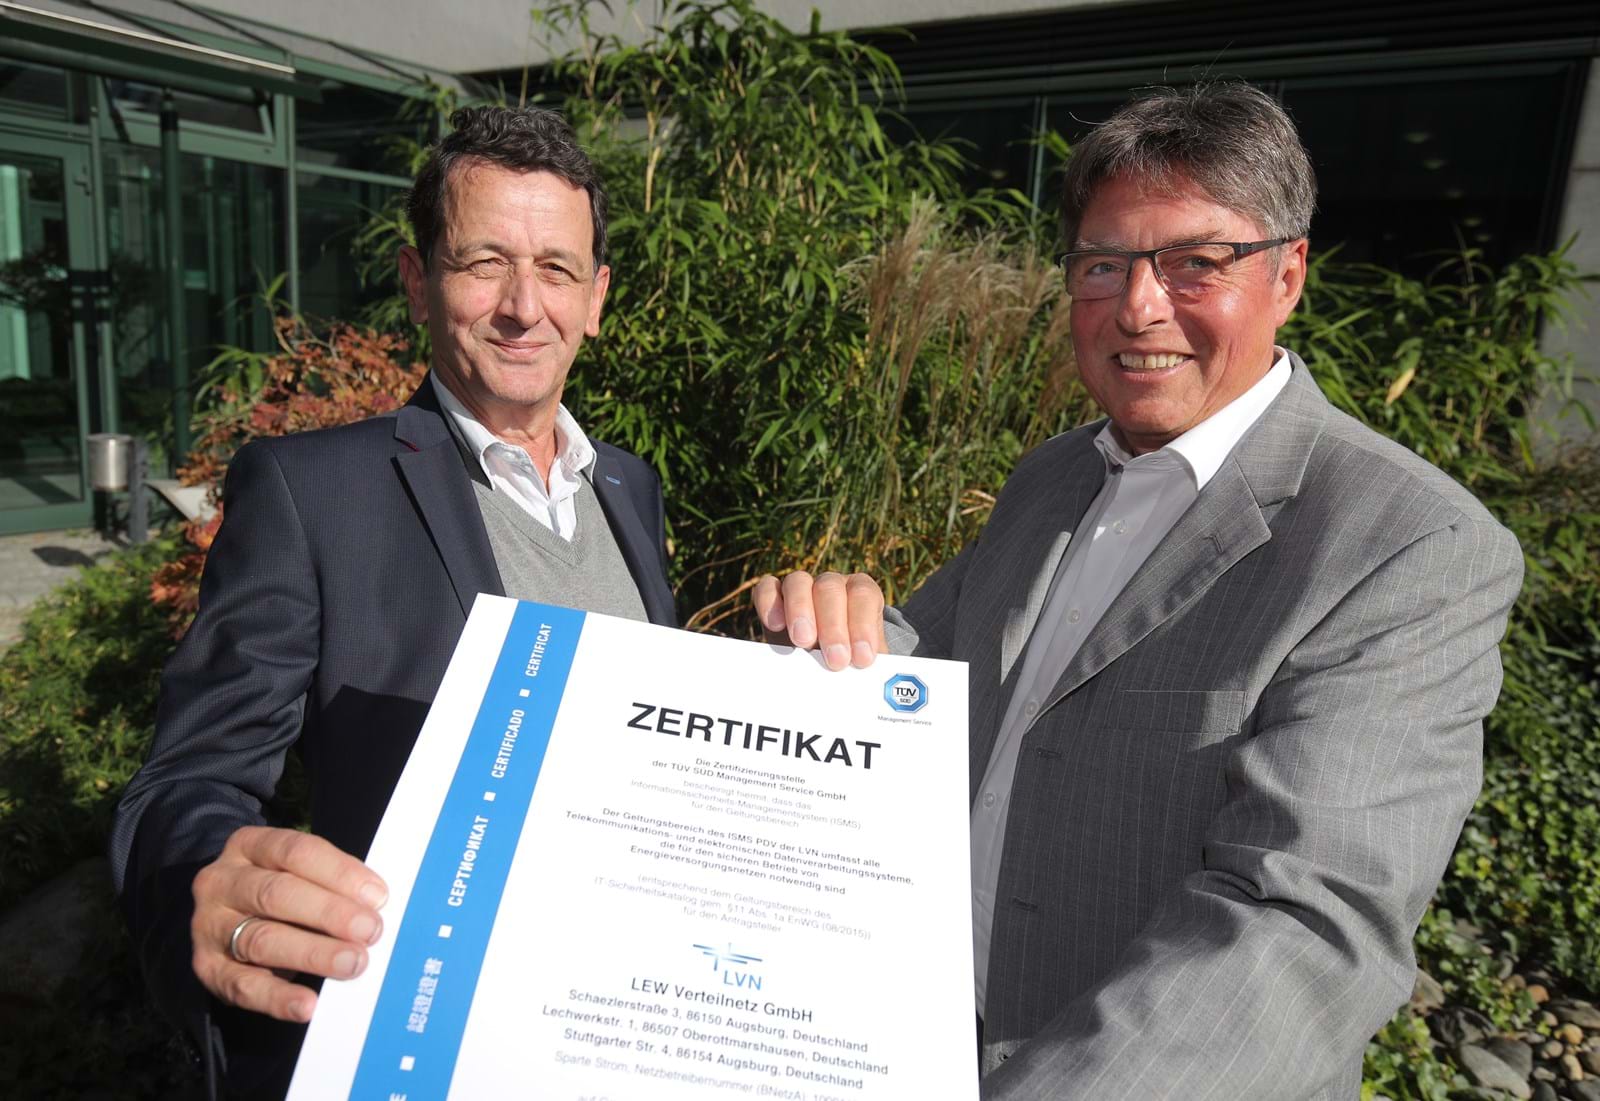 Zertifiziert: LVN erfüllt die Anforderungen des IT-Sicherheitsgesetzes im vollen Umfang. LVN-Geschäftsführer Theo Schmidtner (links) und German Semsch, Informationssicherheitsbeauftragter der LEW-Gruppe, nahmen das Zertifikat entgegen.